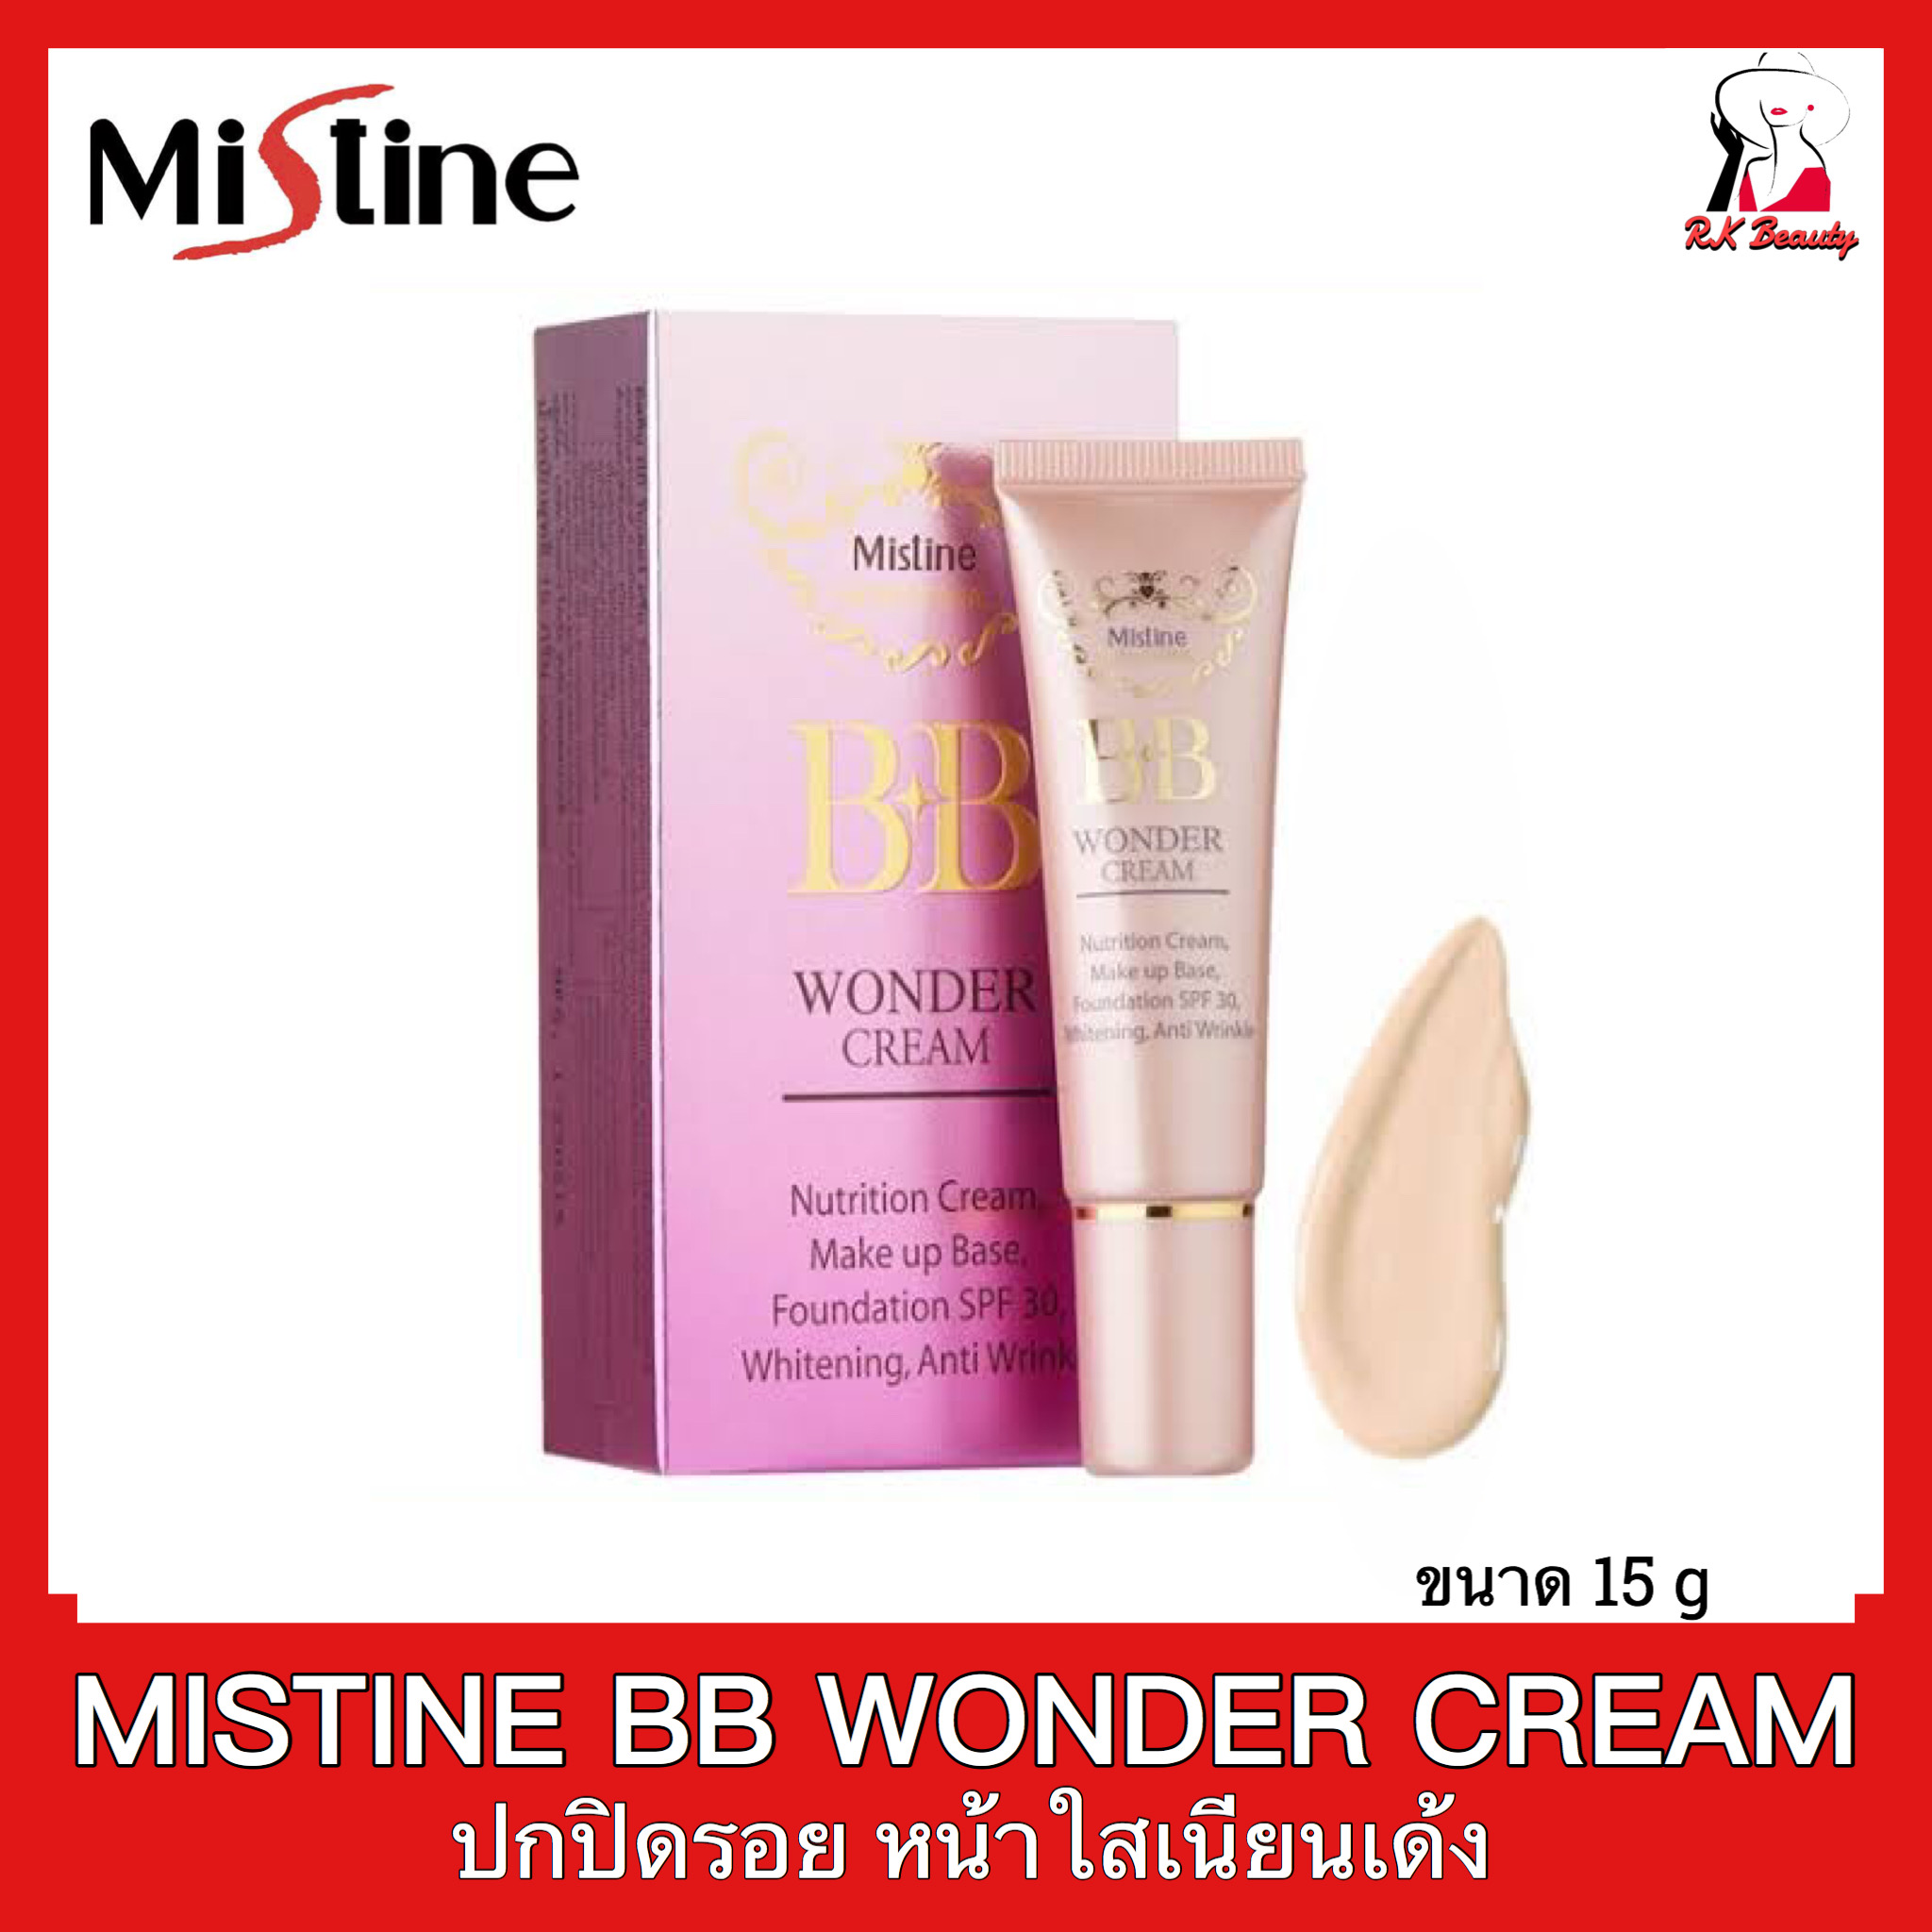 (1หลอด) Mistine BB Wonder cream มิสทีน บีบีวันเดอร์ครีม ขนาด 15 กรัม ปกปิดรอยได้เรียบเนียน หน้าเนียนใสเด้ง